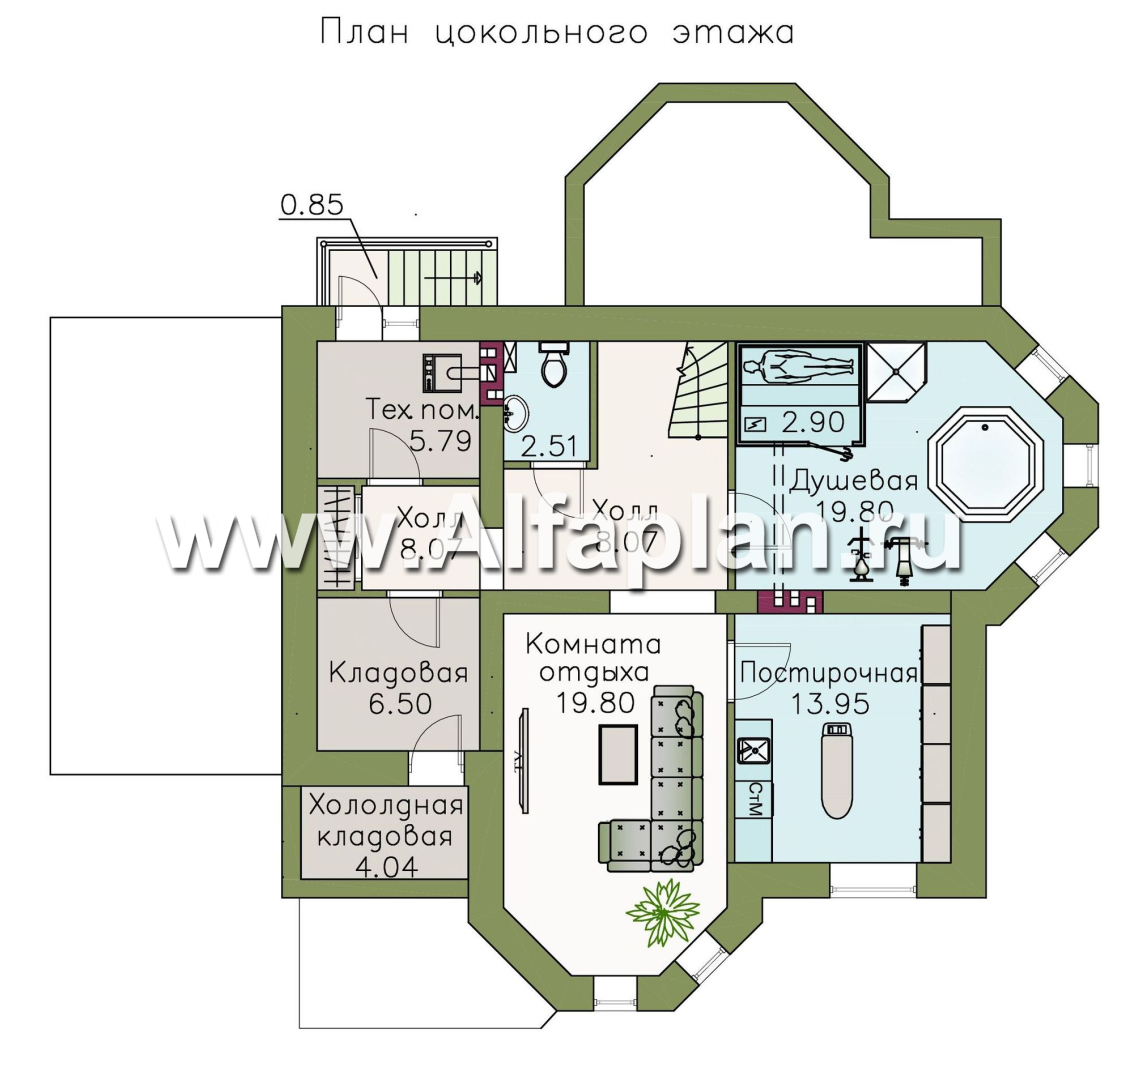 Изображение плана проекта «Классика» - проект двухэтажного дома с эркером, планировка с кабинетом на 1 эт и с террасой, с цокольным этажом №1